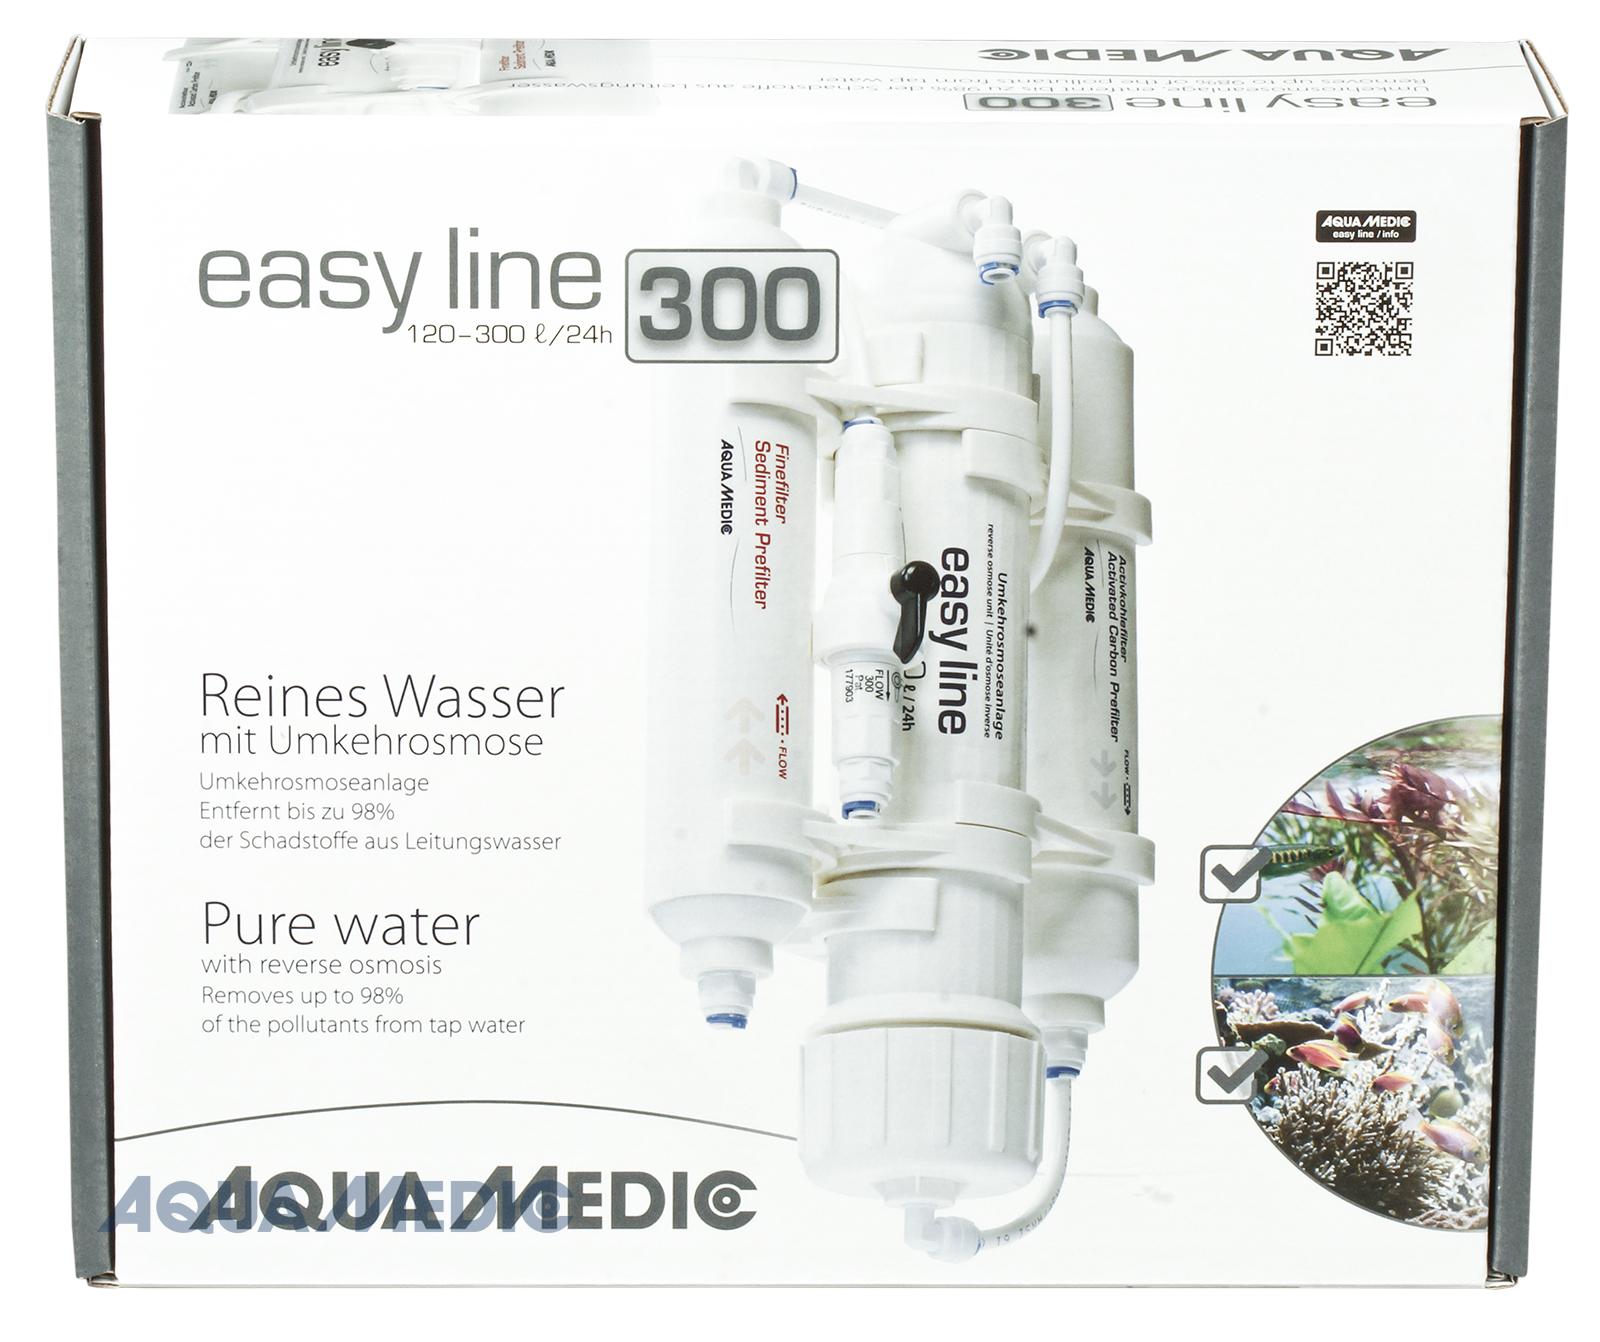 Aqua Medic easy line 300 plus